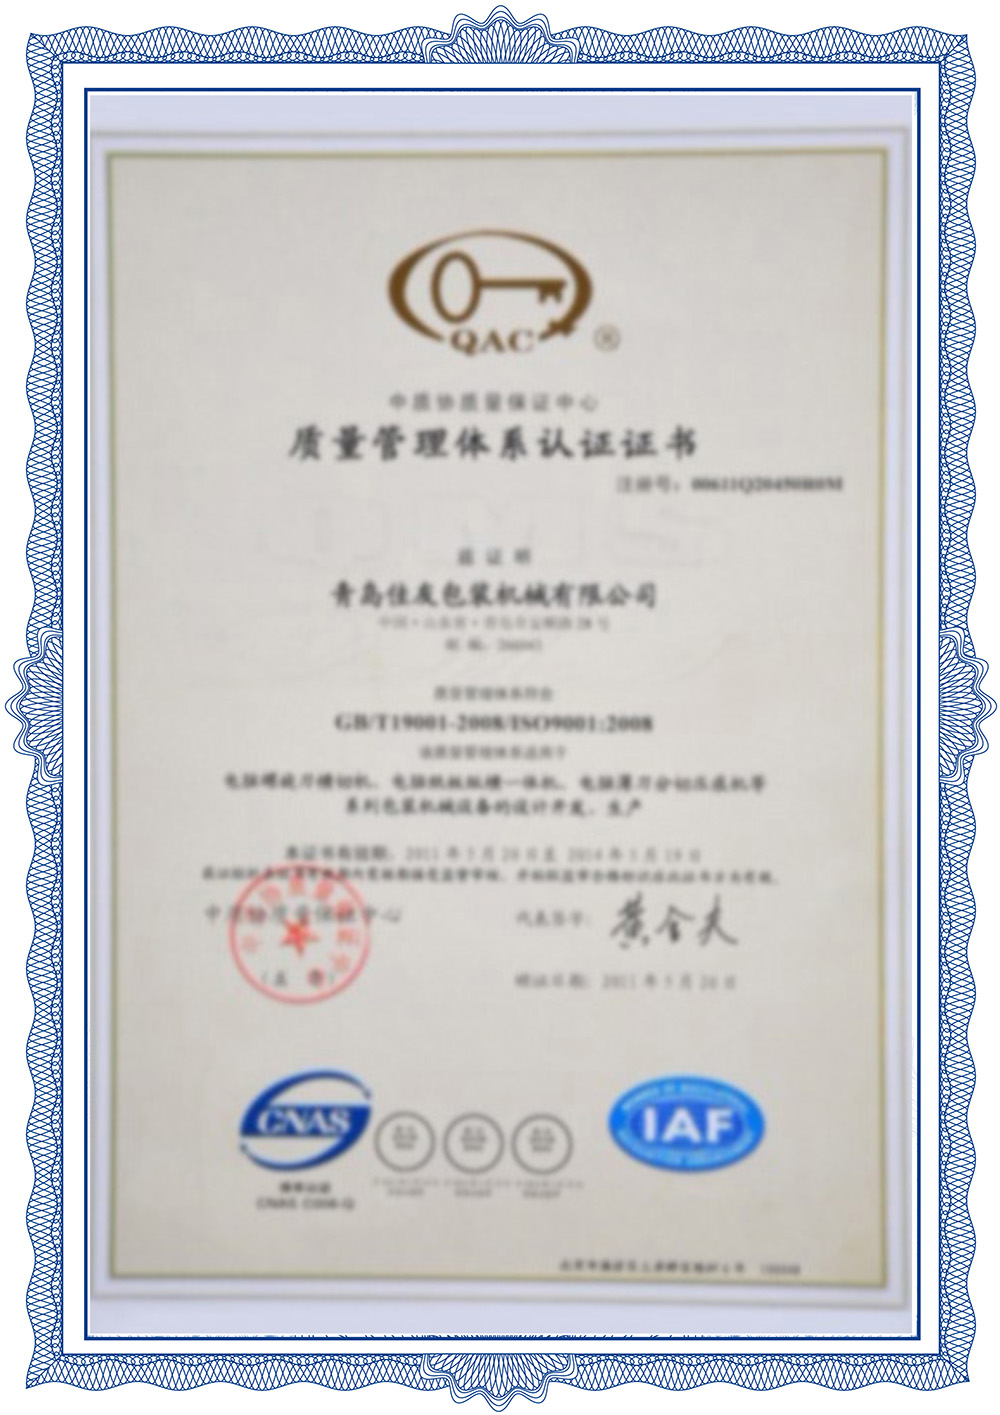 Certifikacija sustava upravljanja kvalitetom